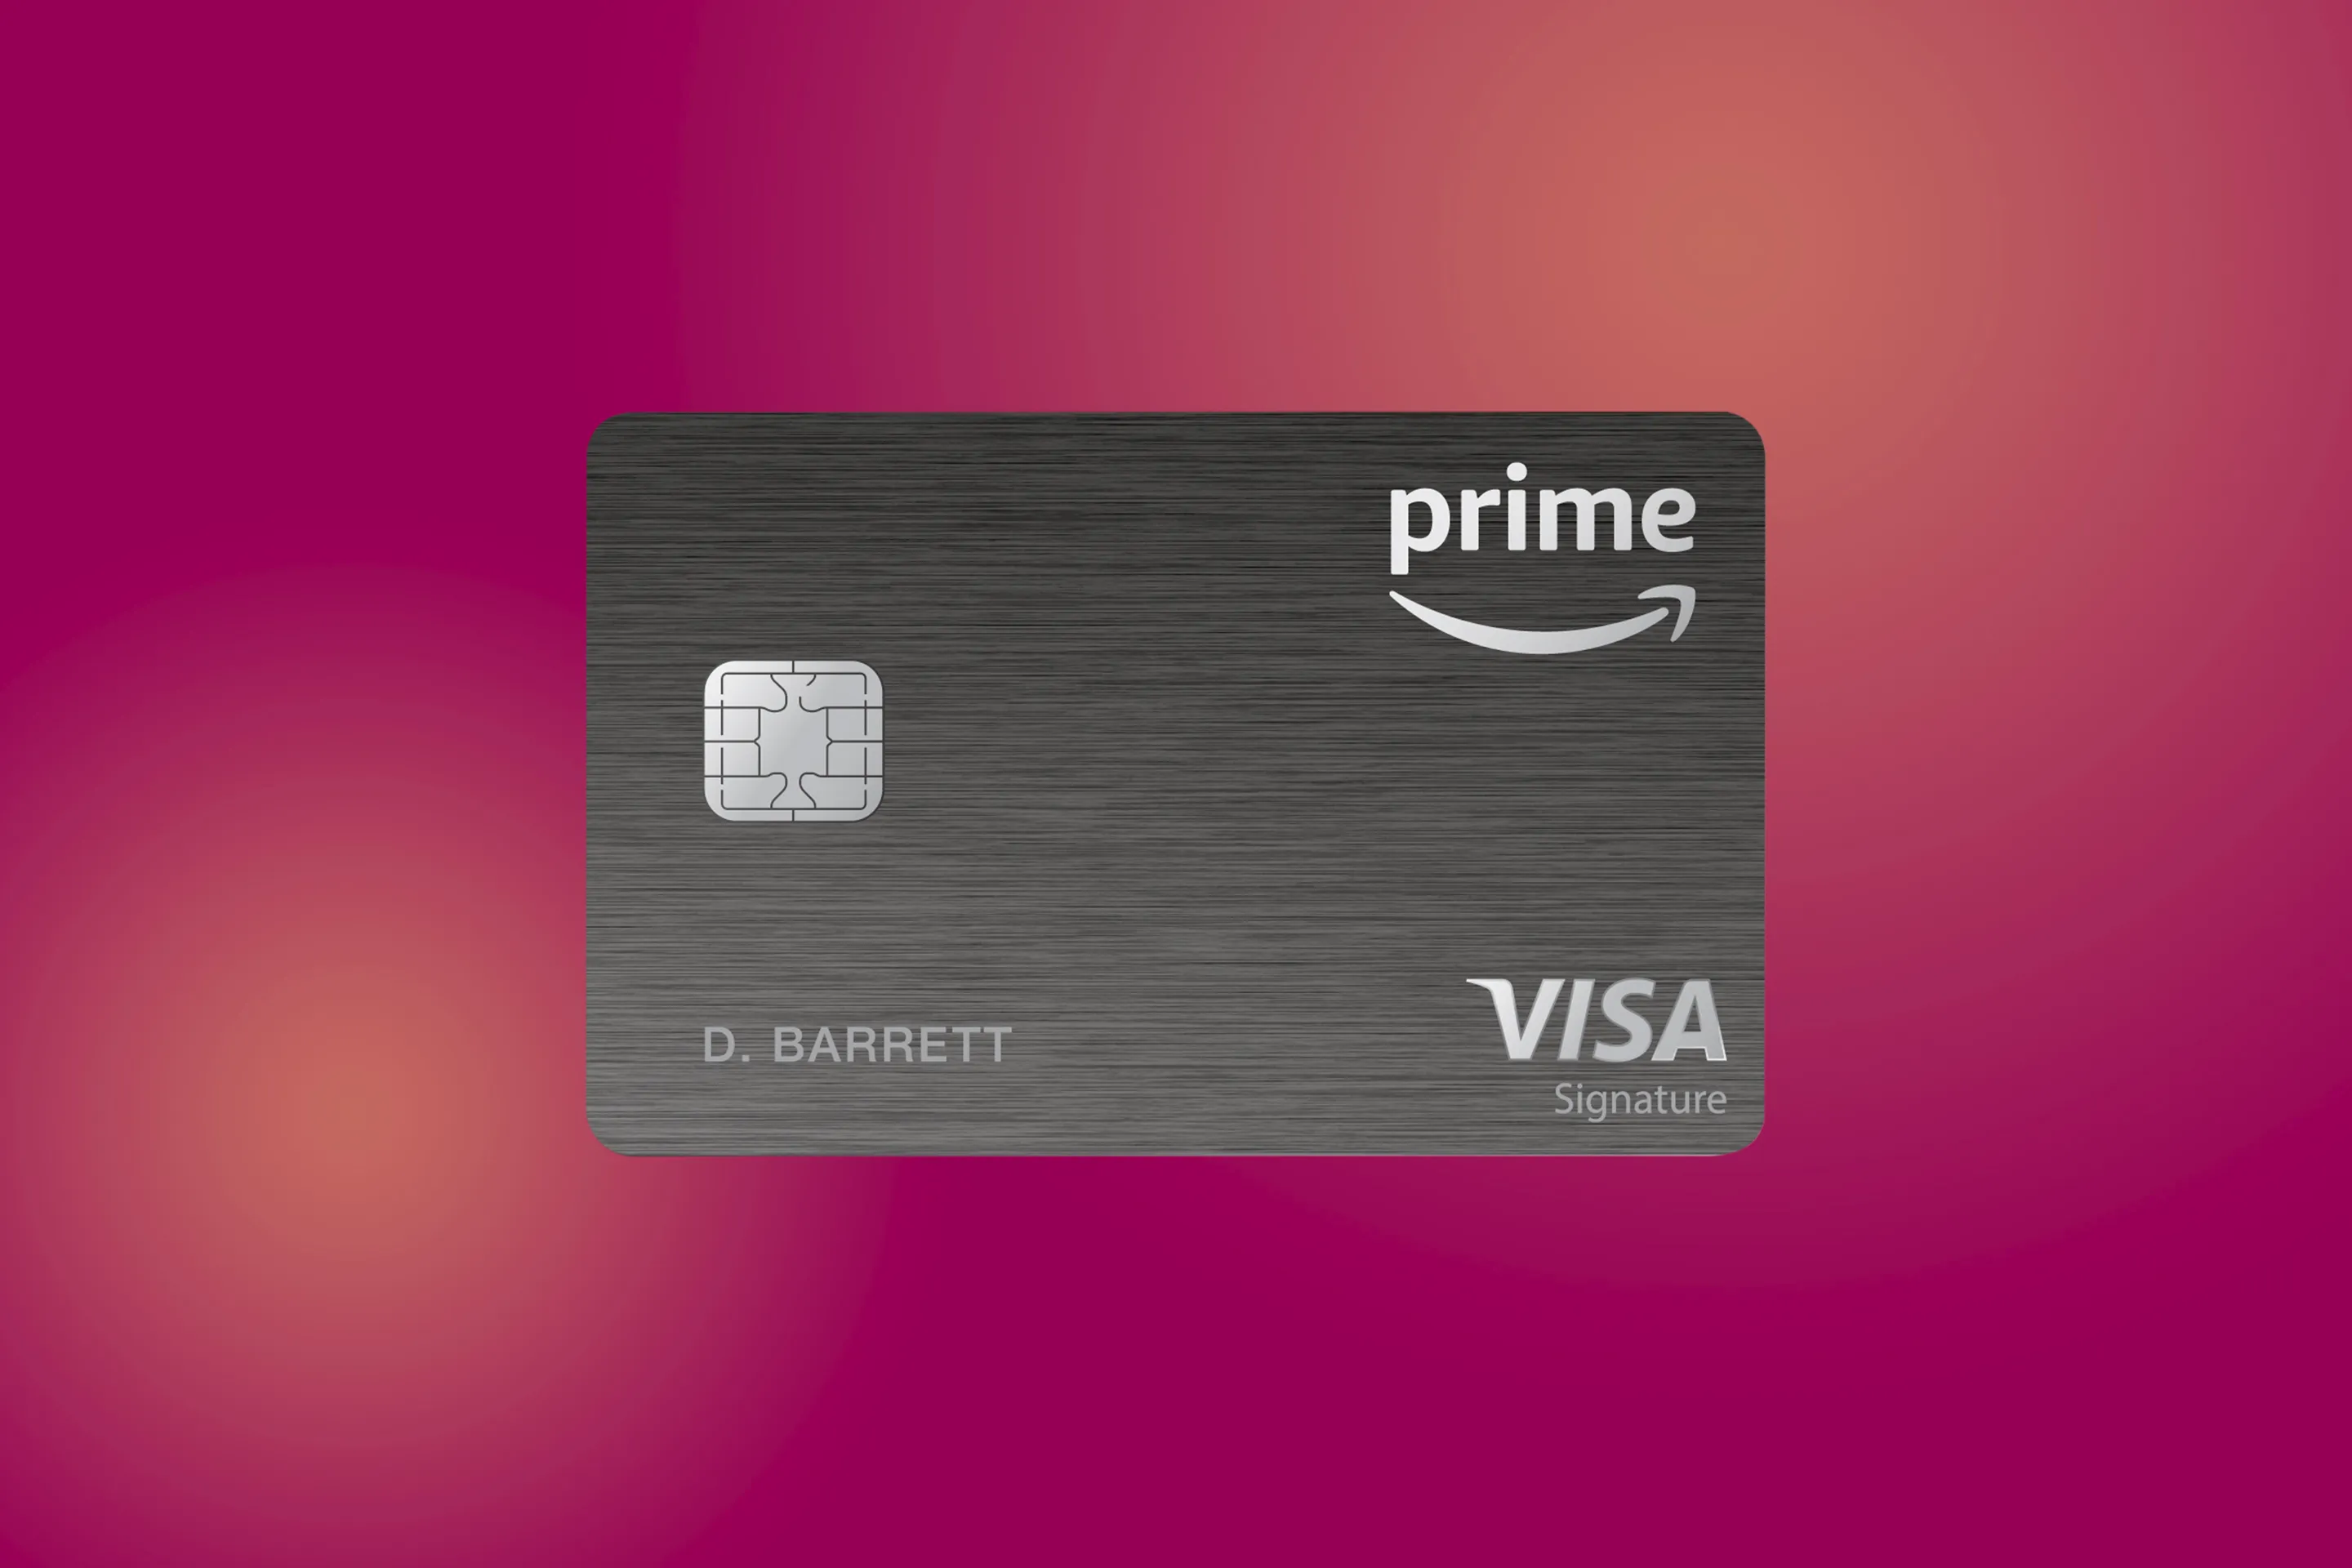 amazon prime rewards visa signature card